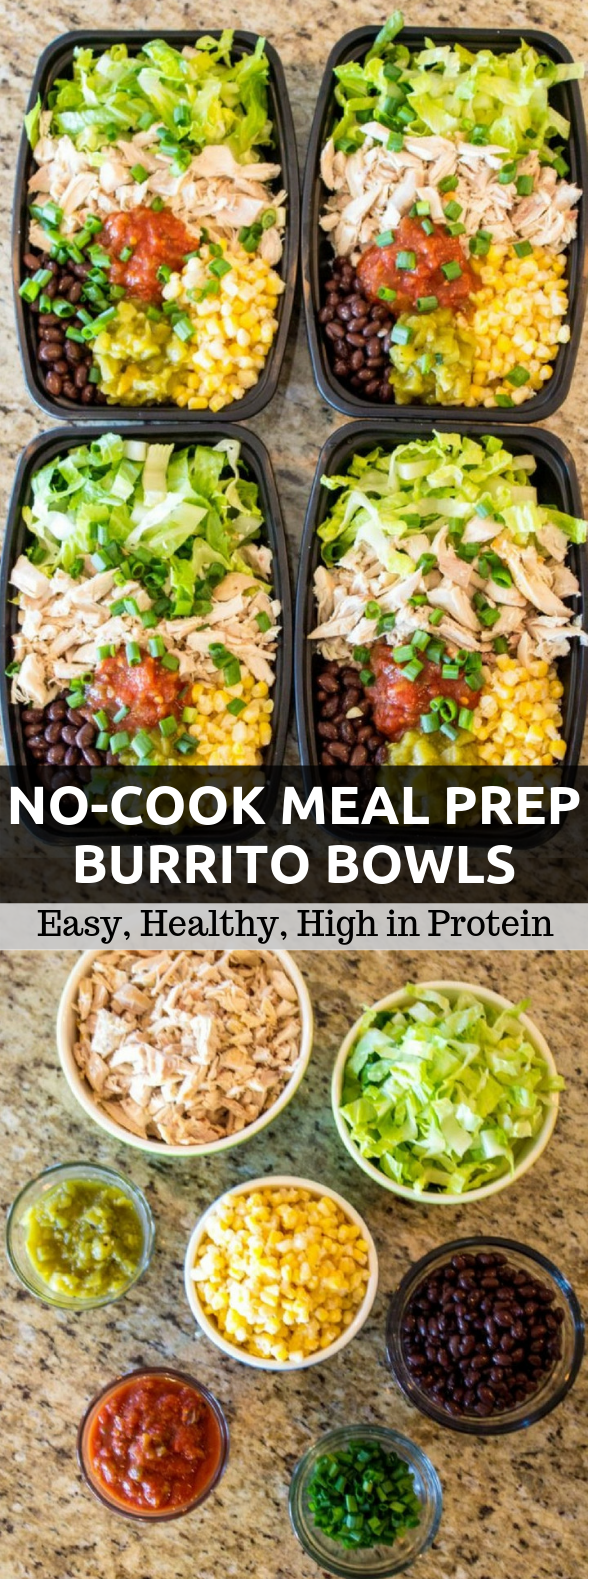 No-Cook Meal Prep Burrito Bowls #lunch #mealprep